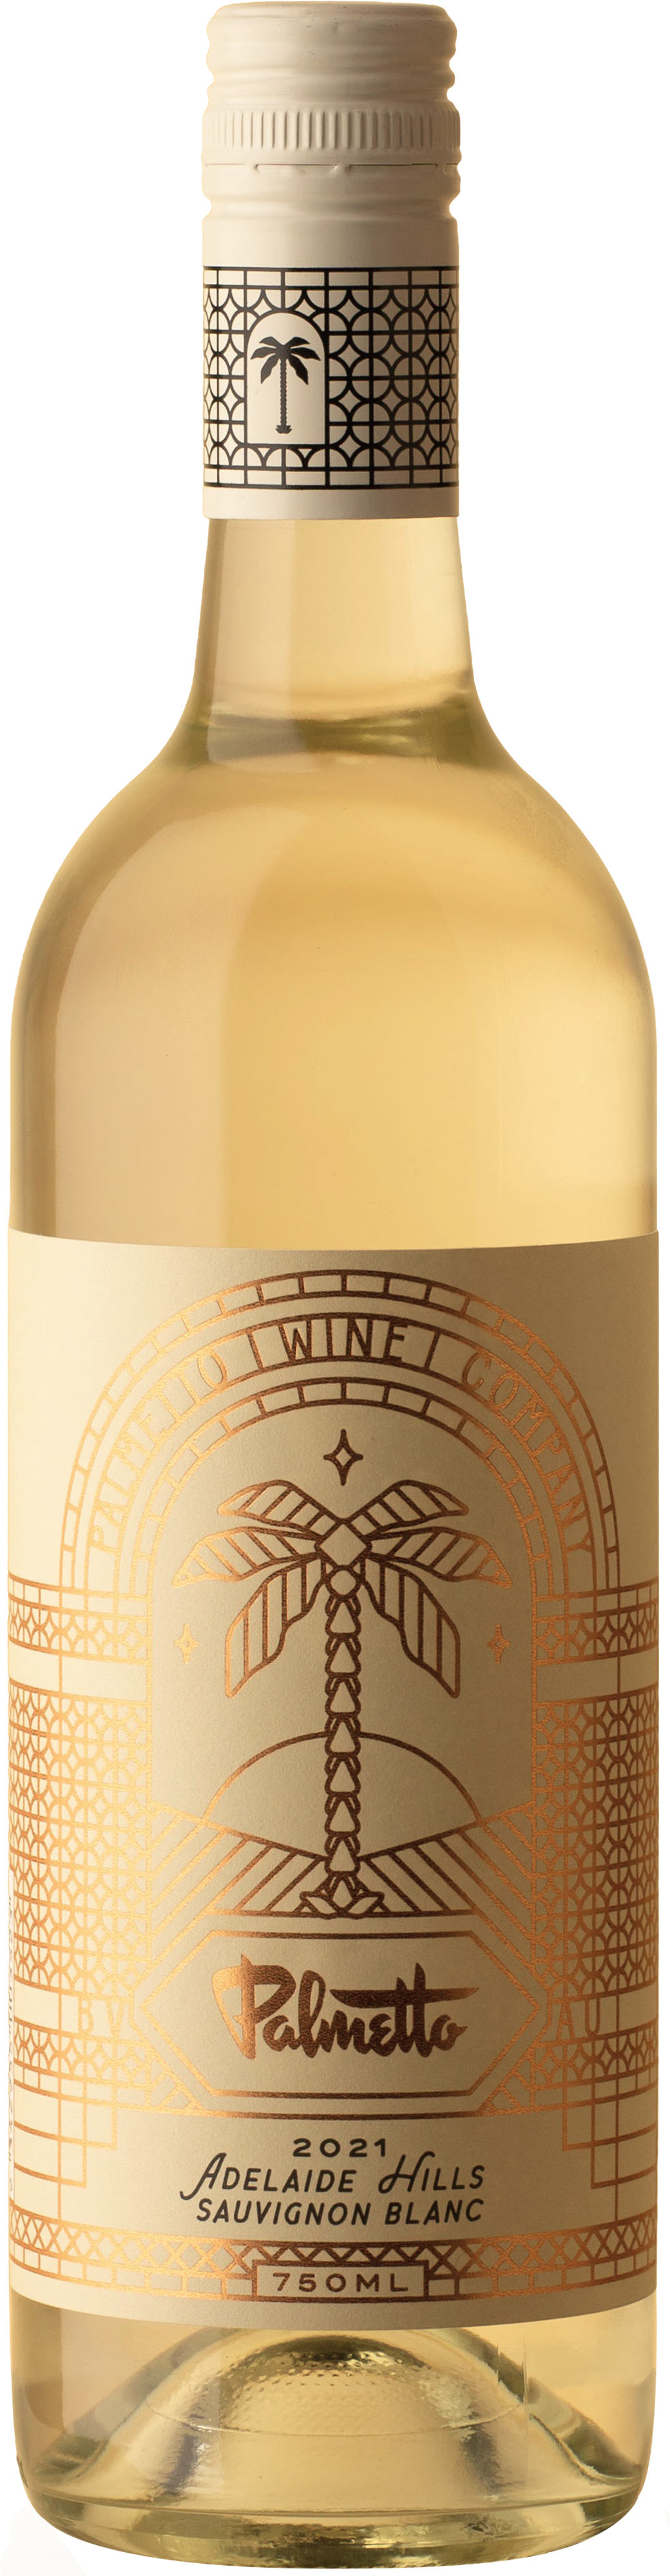 Palmetto - Sauvignon Blanc 2021 White Wine